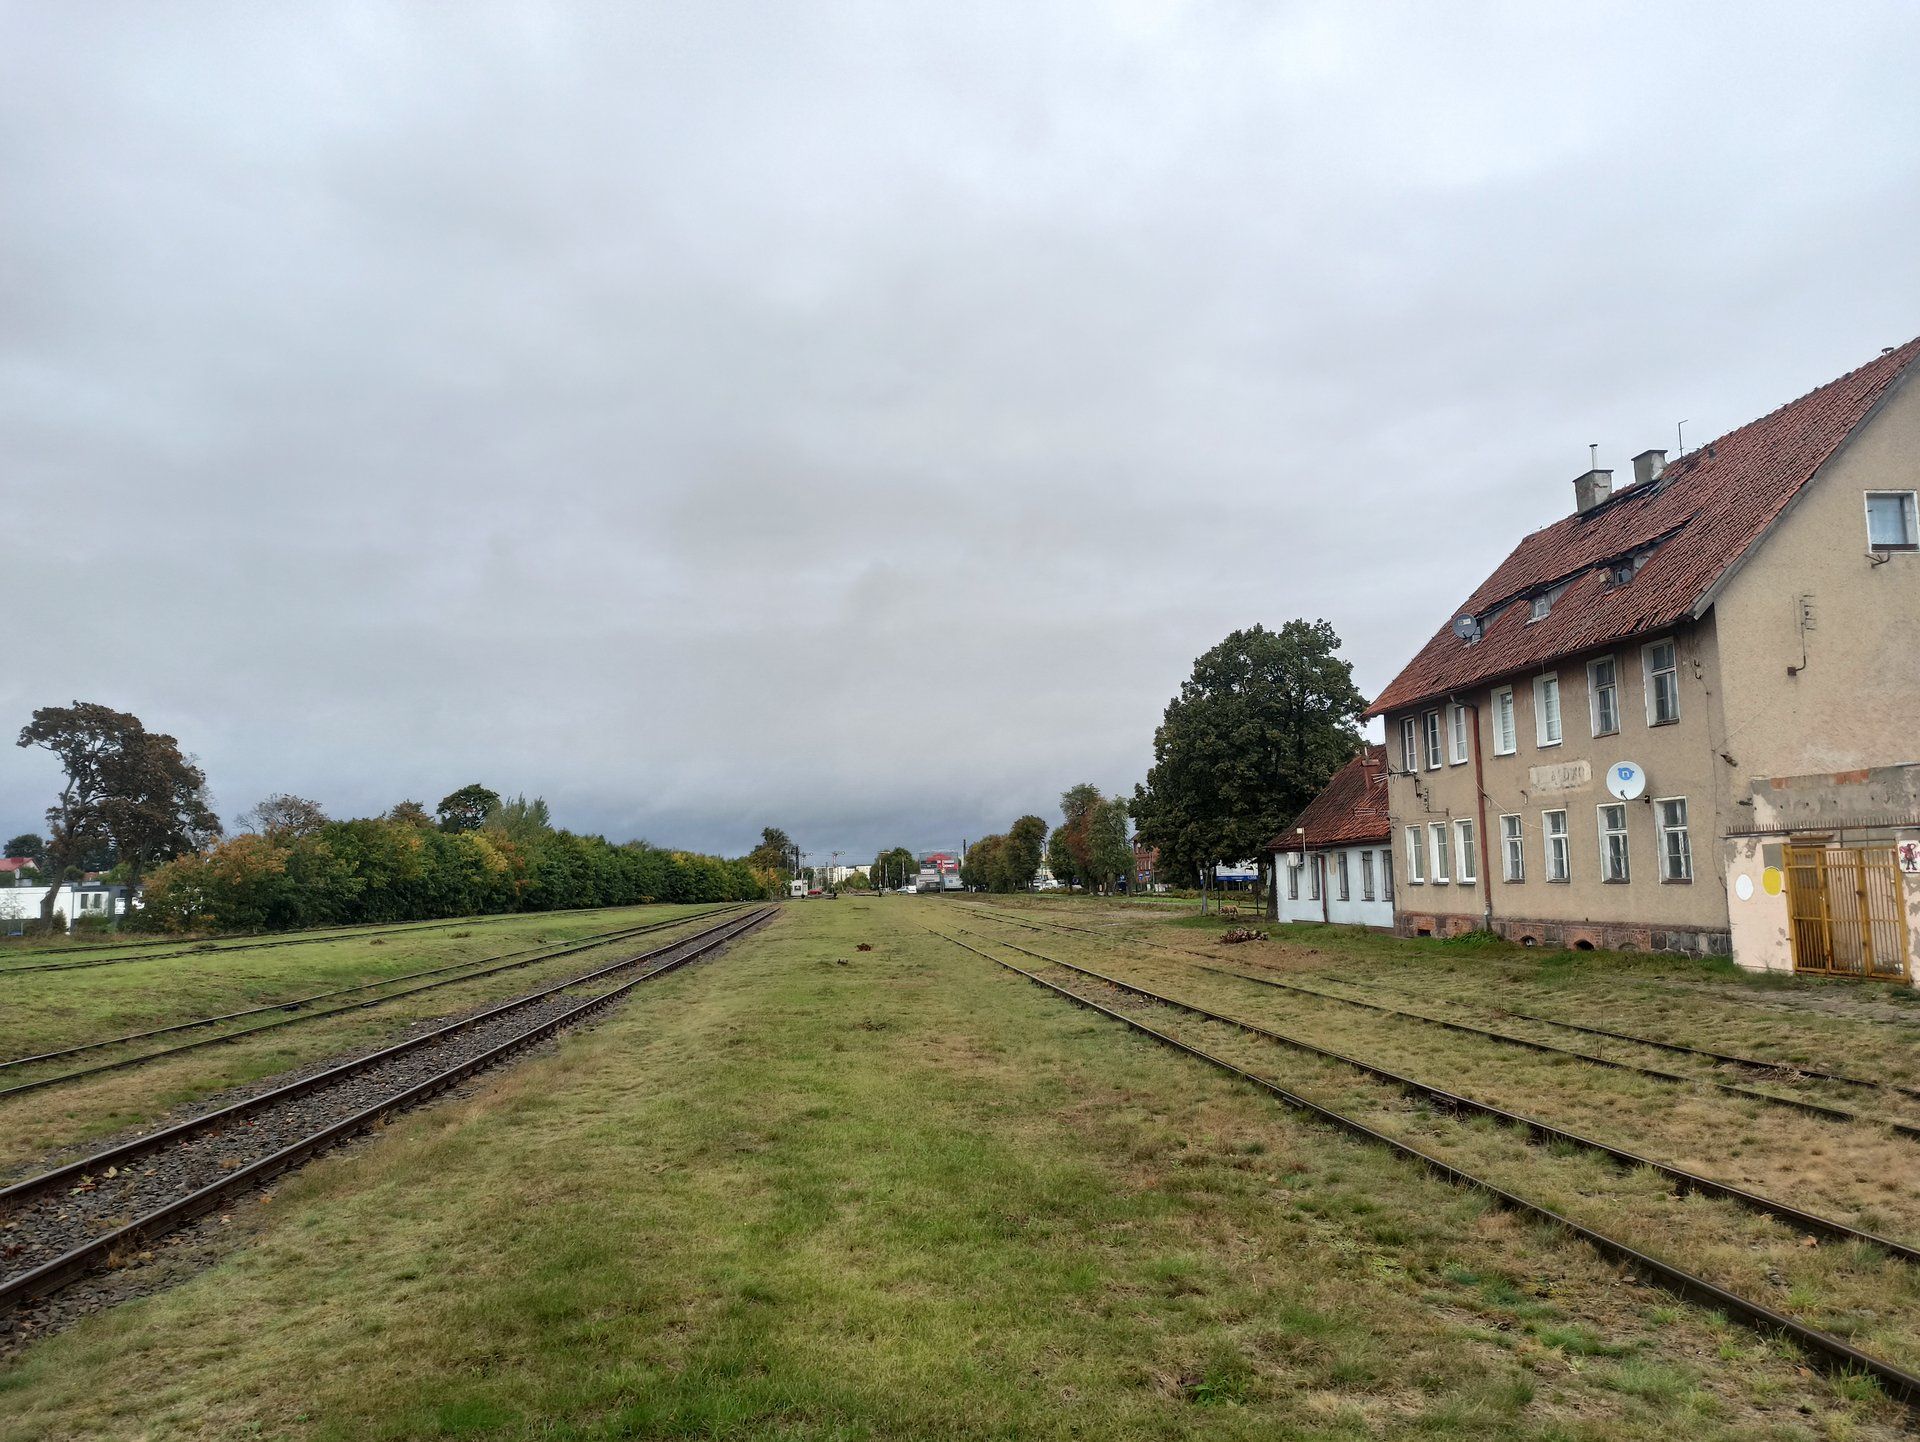 Powrót kolei przez Mazury do Mrągowa i Mikołajek